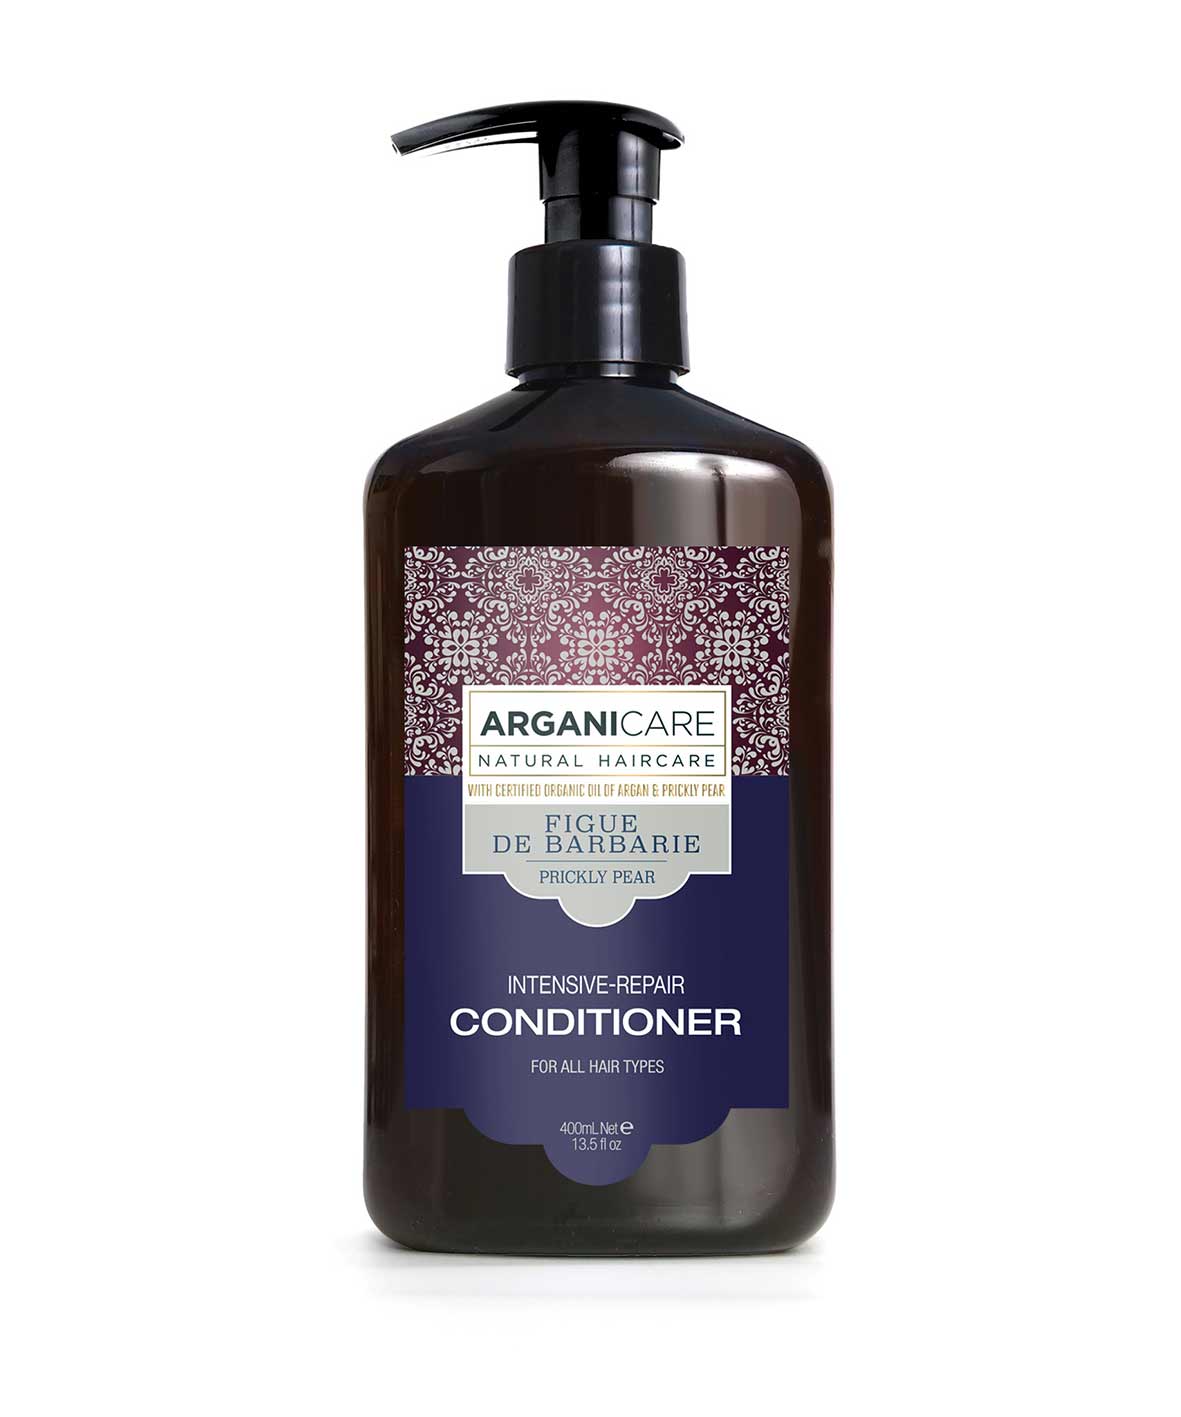 Arganicare - Figue de barbarie - Après-shampoing "Intensive Repair" - 400 ml - Arganicare - Ethni Beauty Market